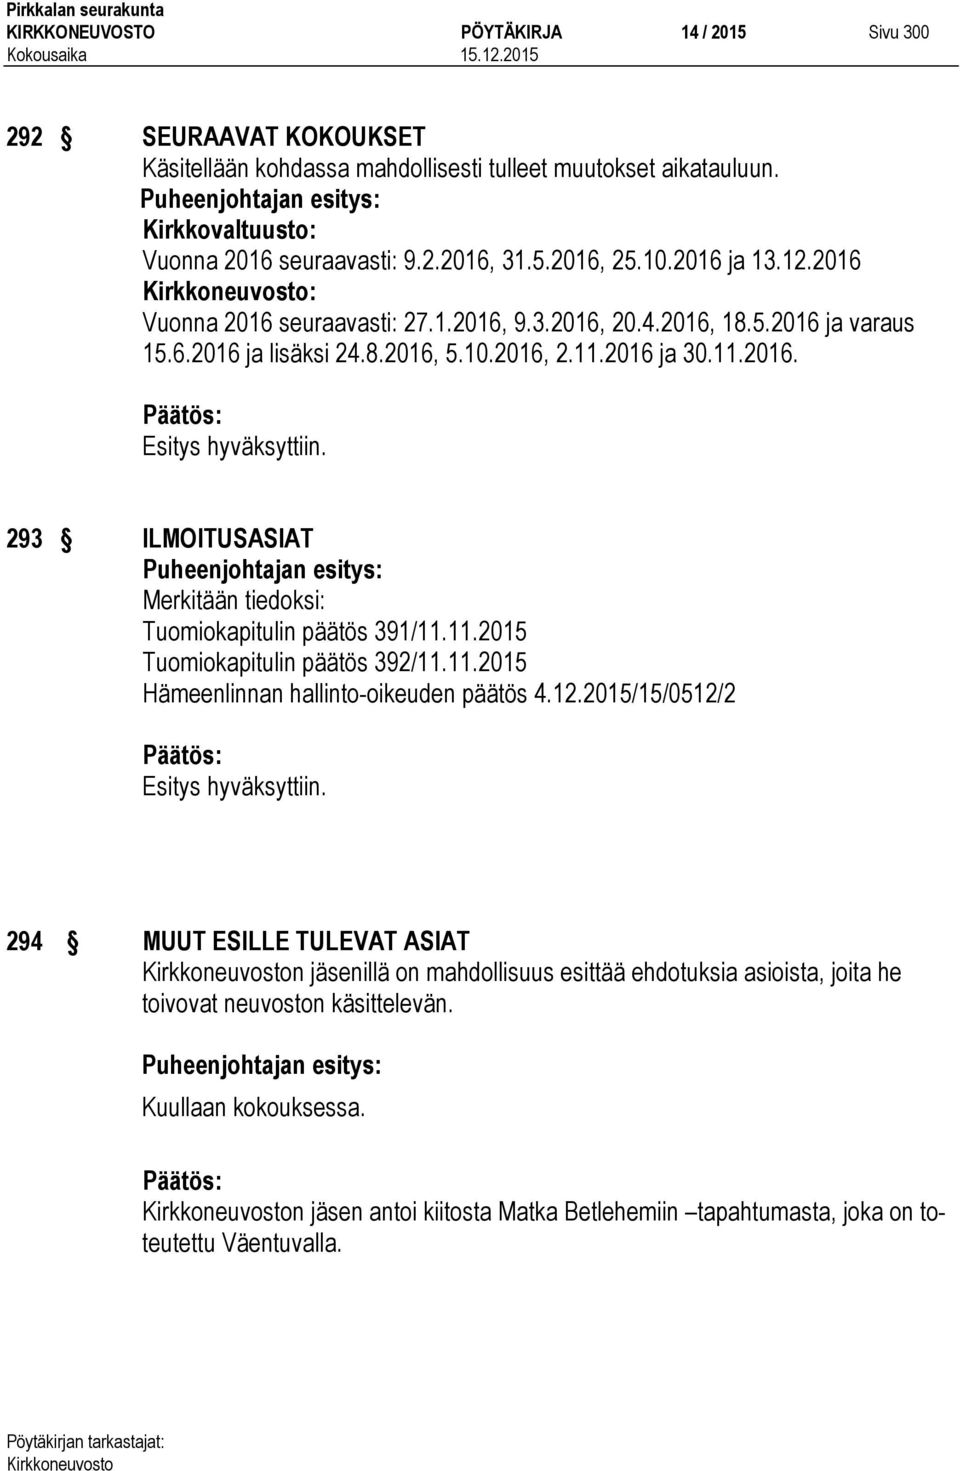 11.2015 Tuomiokapitulin päätös 392/11.11.2015 Hämeenlinnan hallinto-oikeuden päätös 4.12.